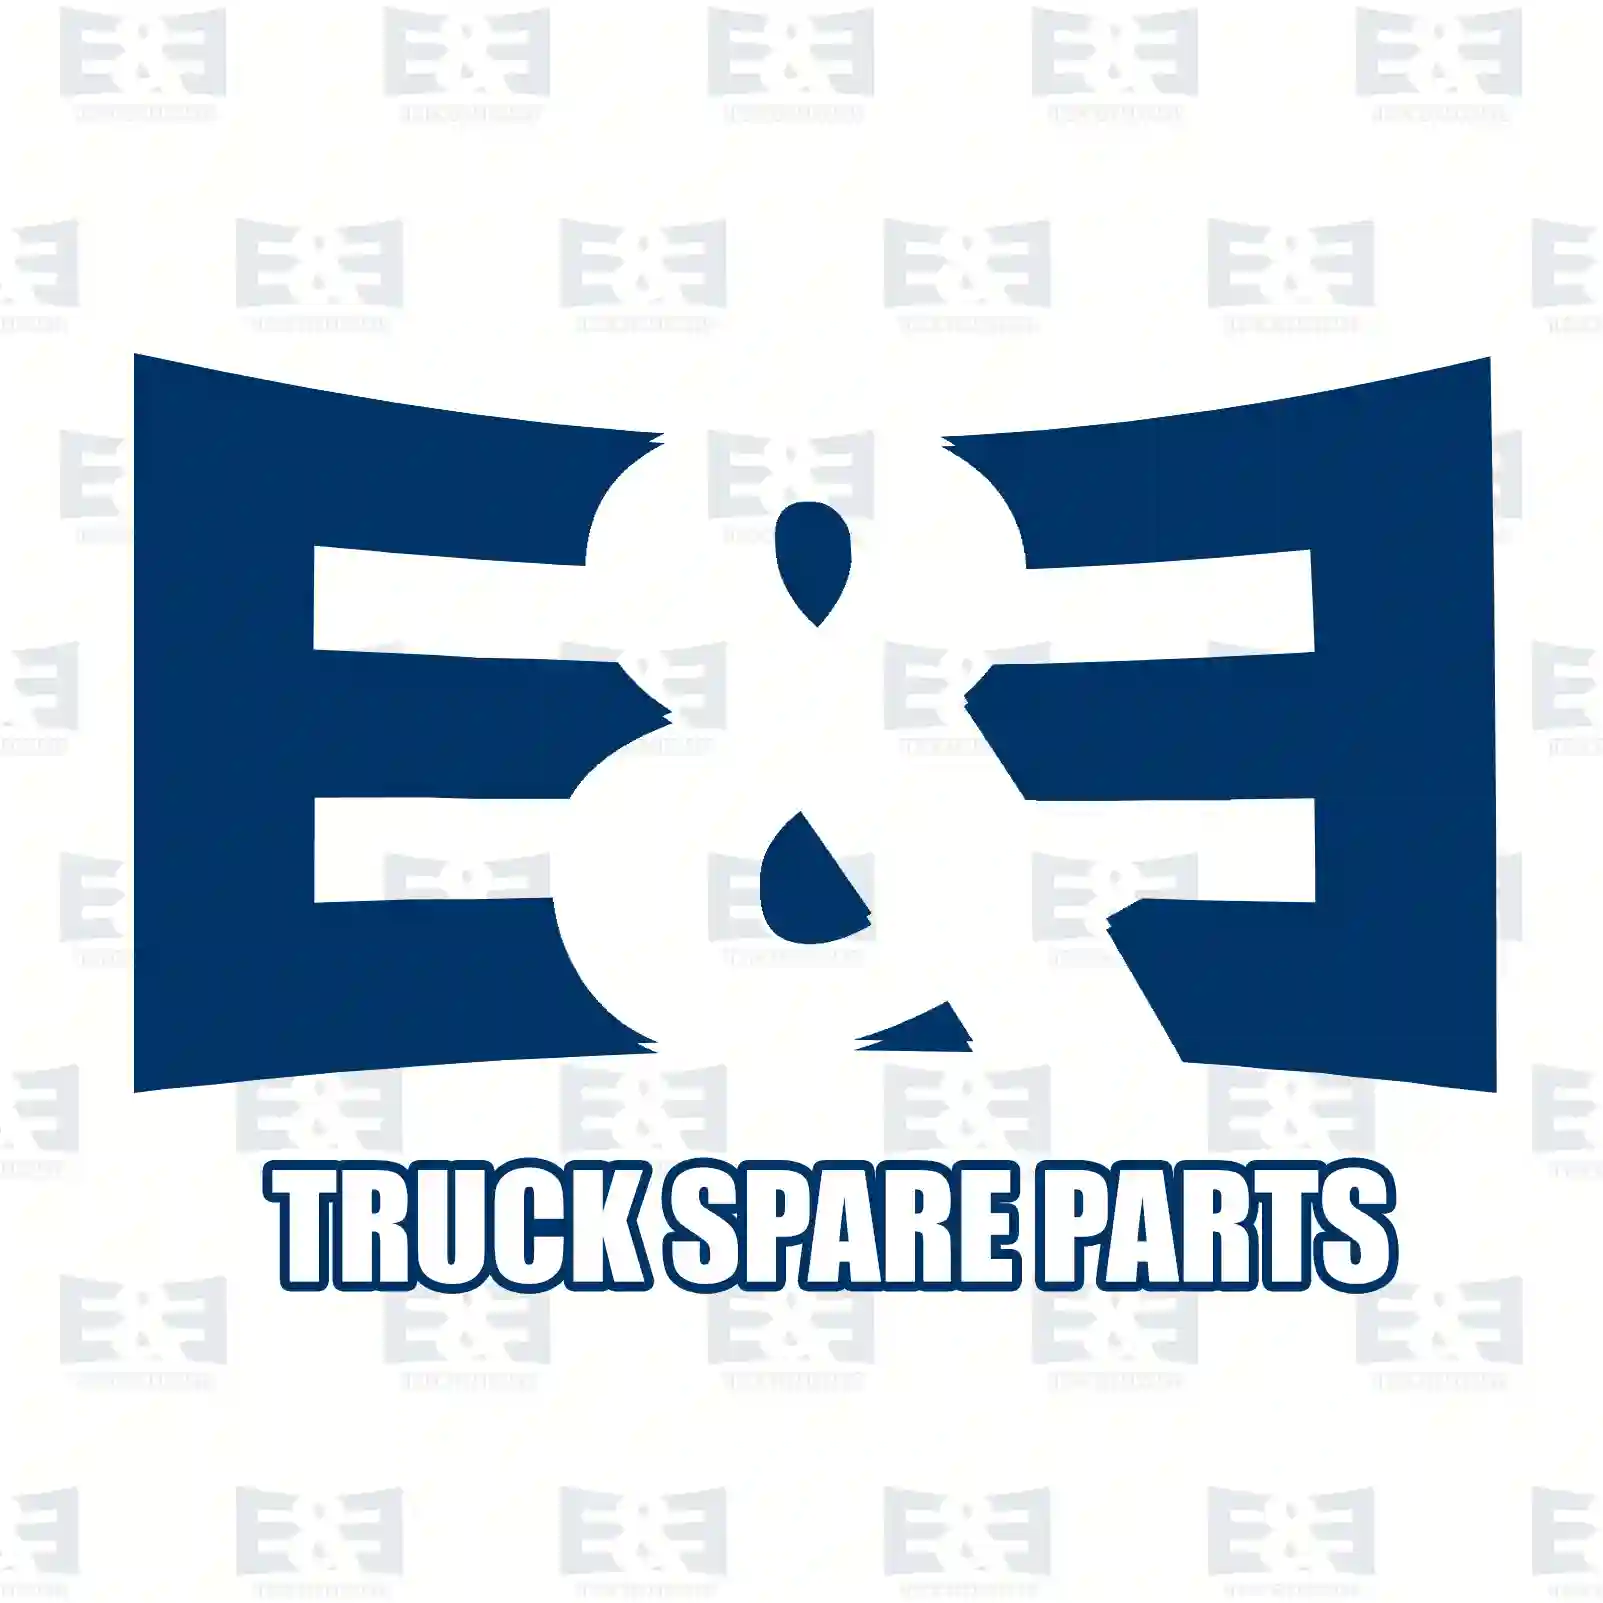 Clutch disc, 2E2288838, 1668929, 3192845, 8112662, 85001033 ||  2E2288838 E&E Truck Spare Parts | Truck Spare Parts, Auotomotive Spare Parts Clutch disc, 2E2288838, 1668929, 3192845, 8112662, 85001033 ||  2E2288838 E&E Truck Spare Parts | Truck Spare Parts, Auotomotive Spare Parts